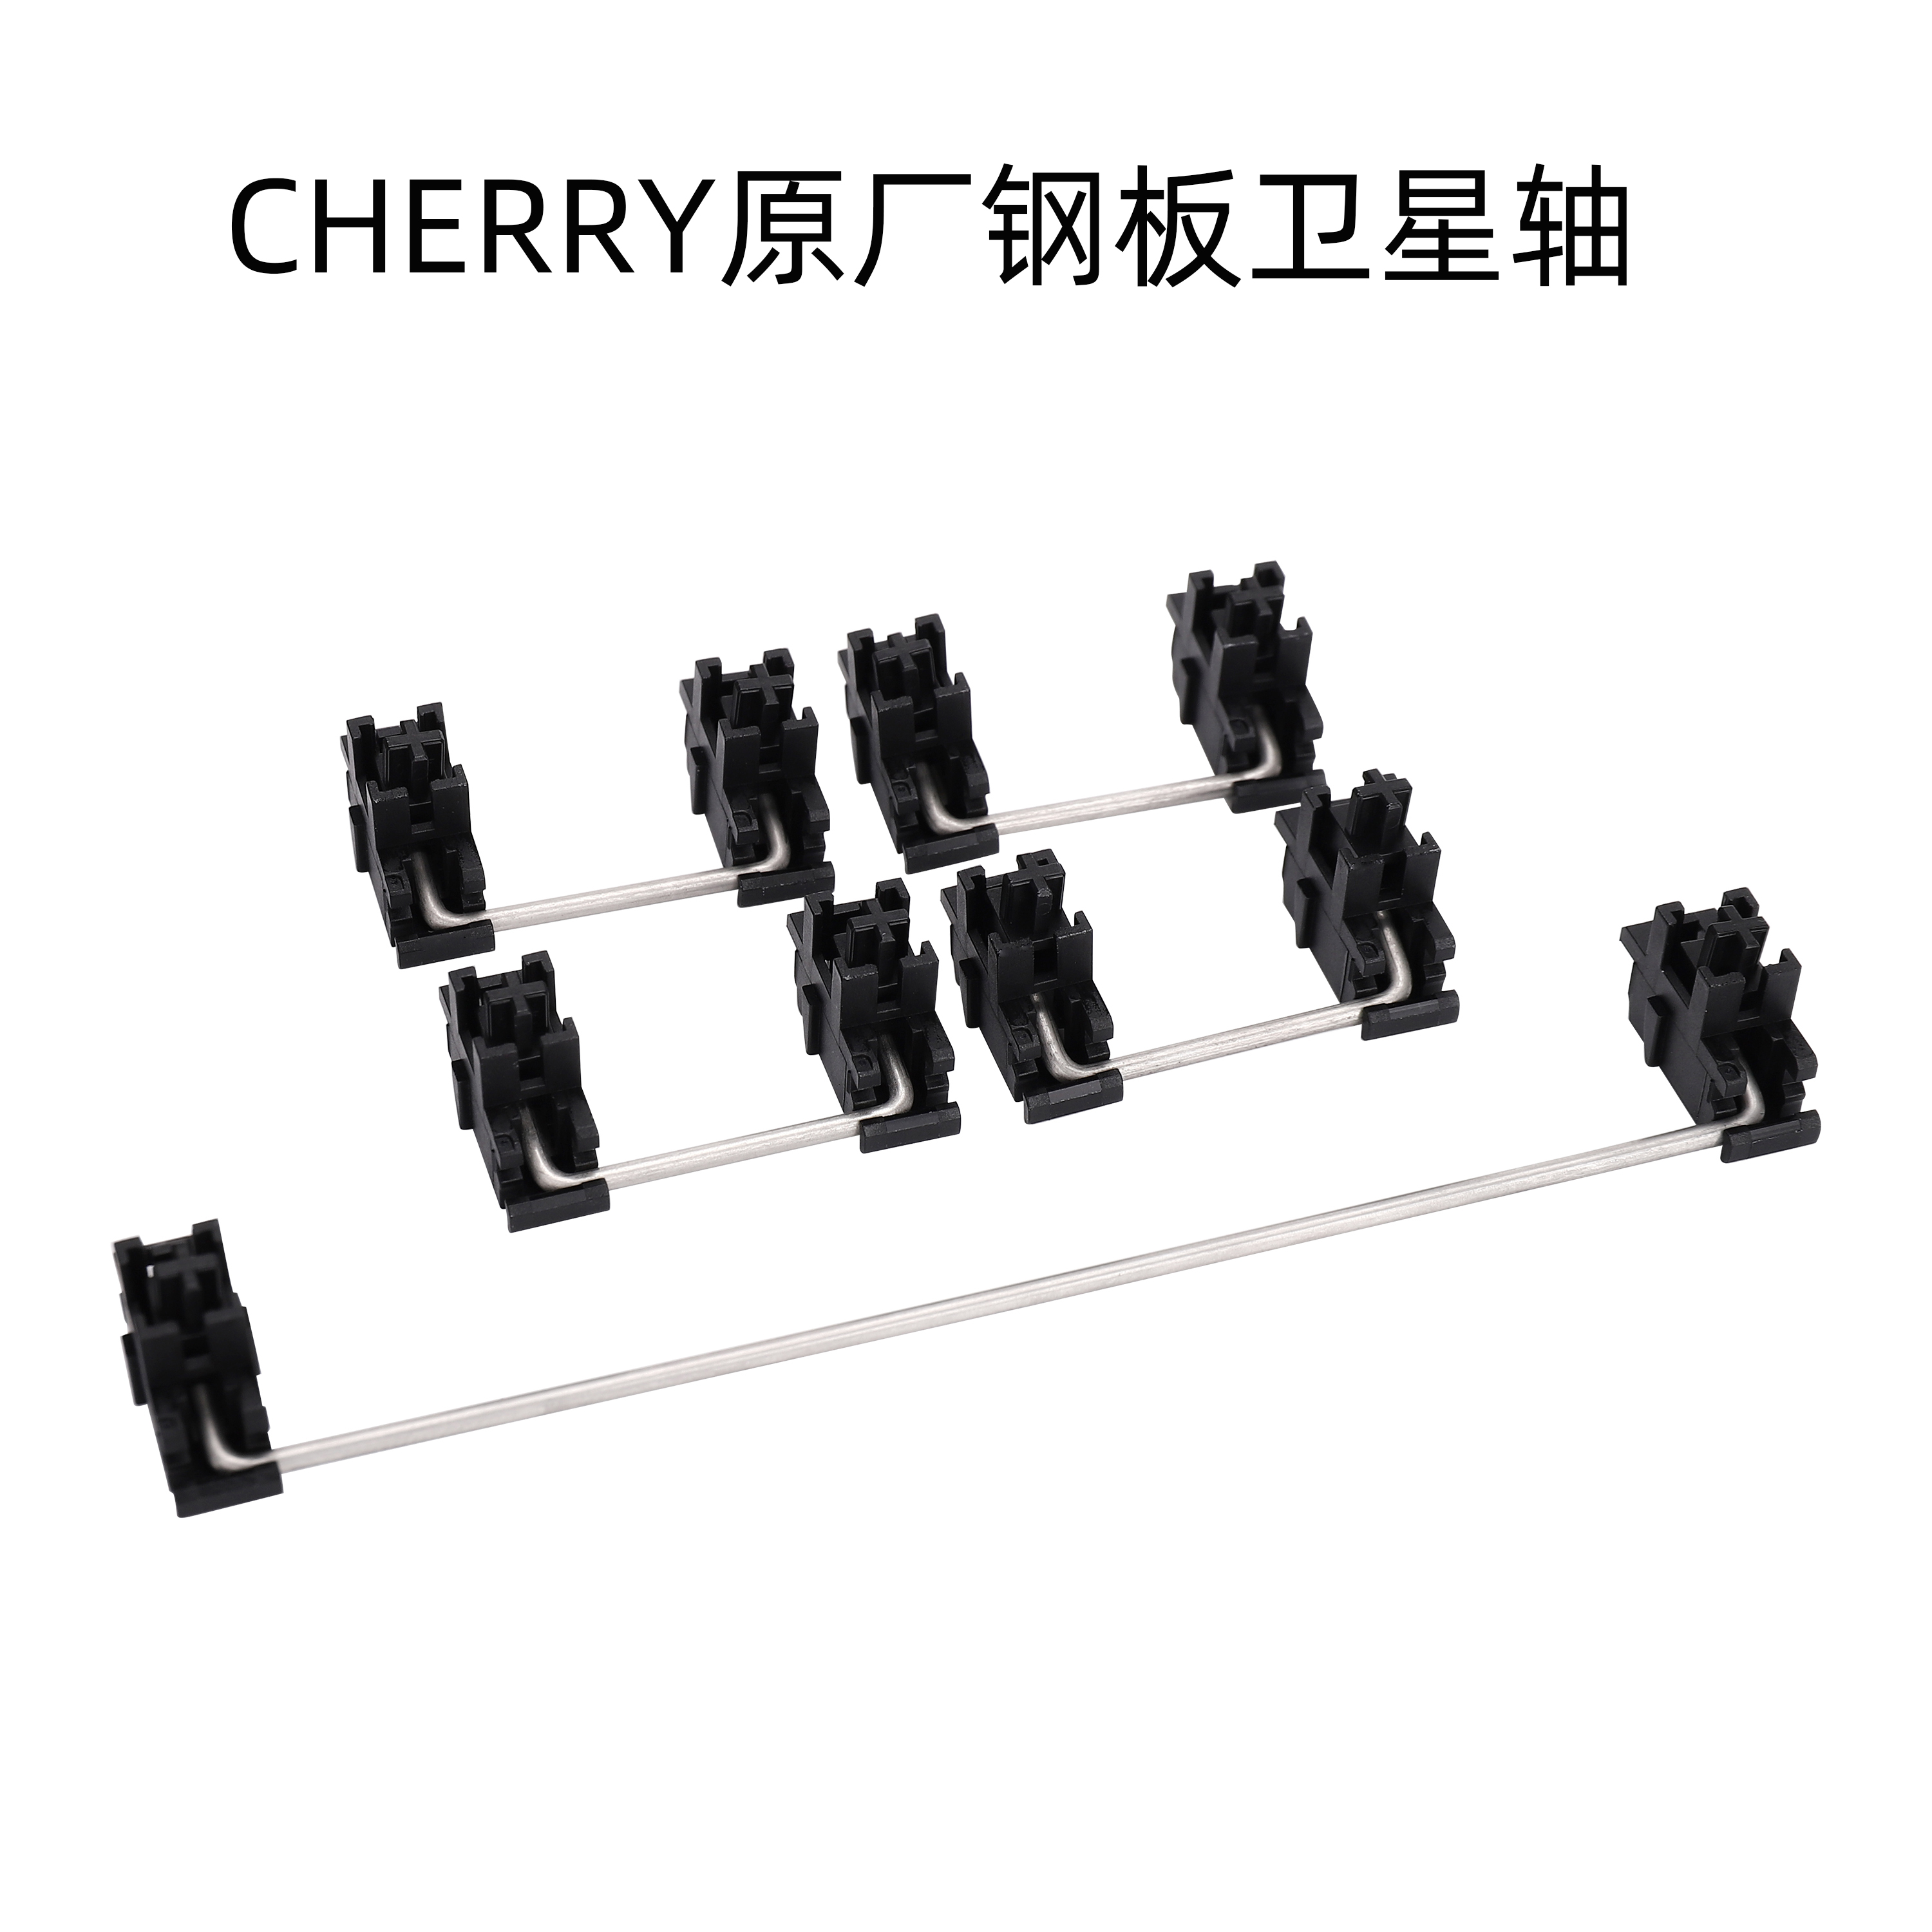 Cherry樱桃原厂钢板卫星轴机械键盘plate stabilizer 2U 6.25U